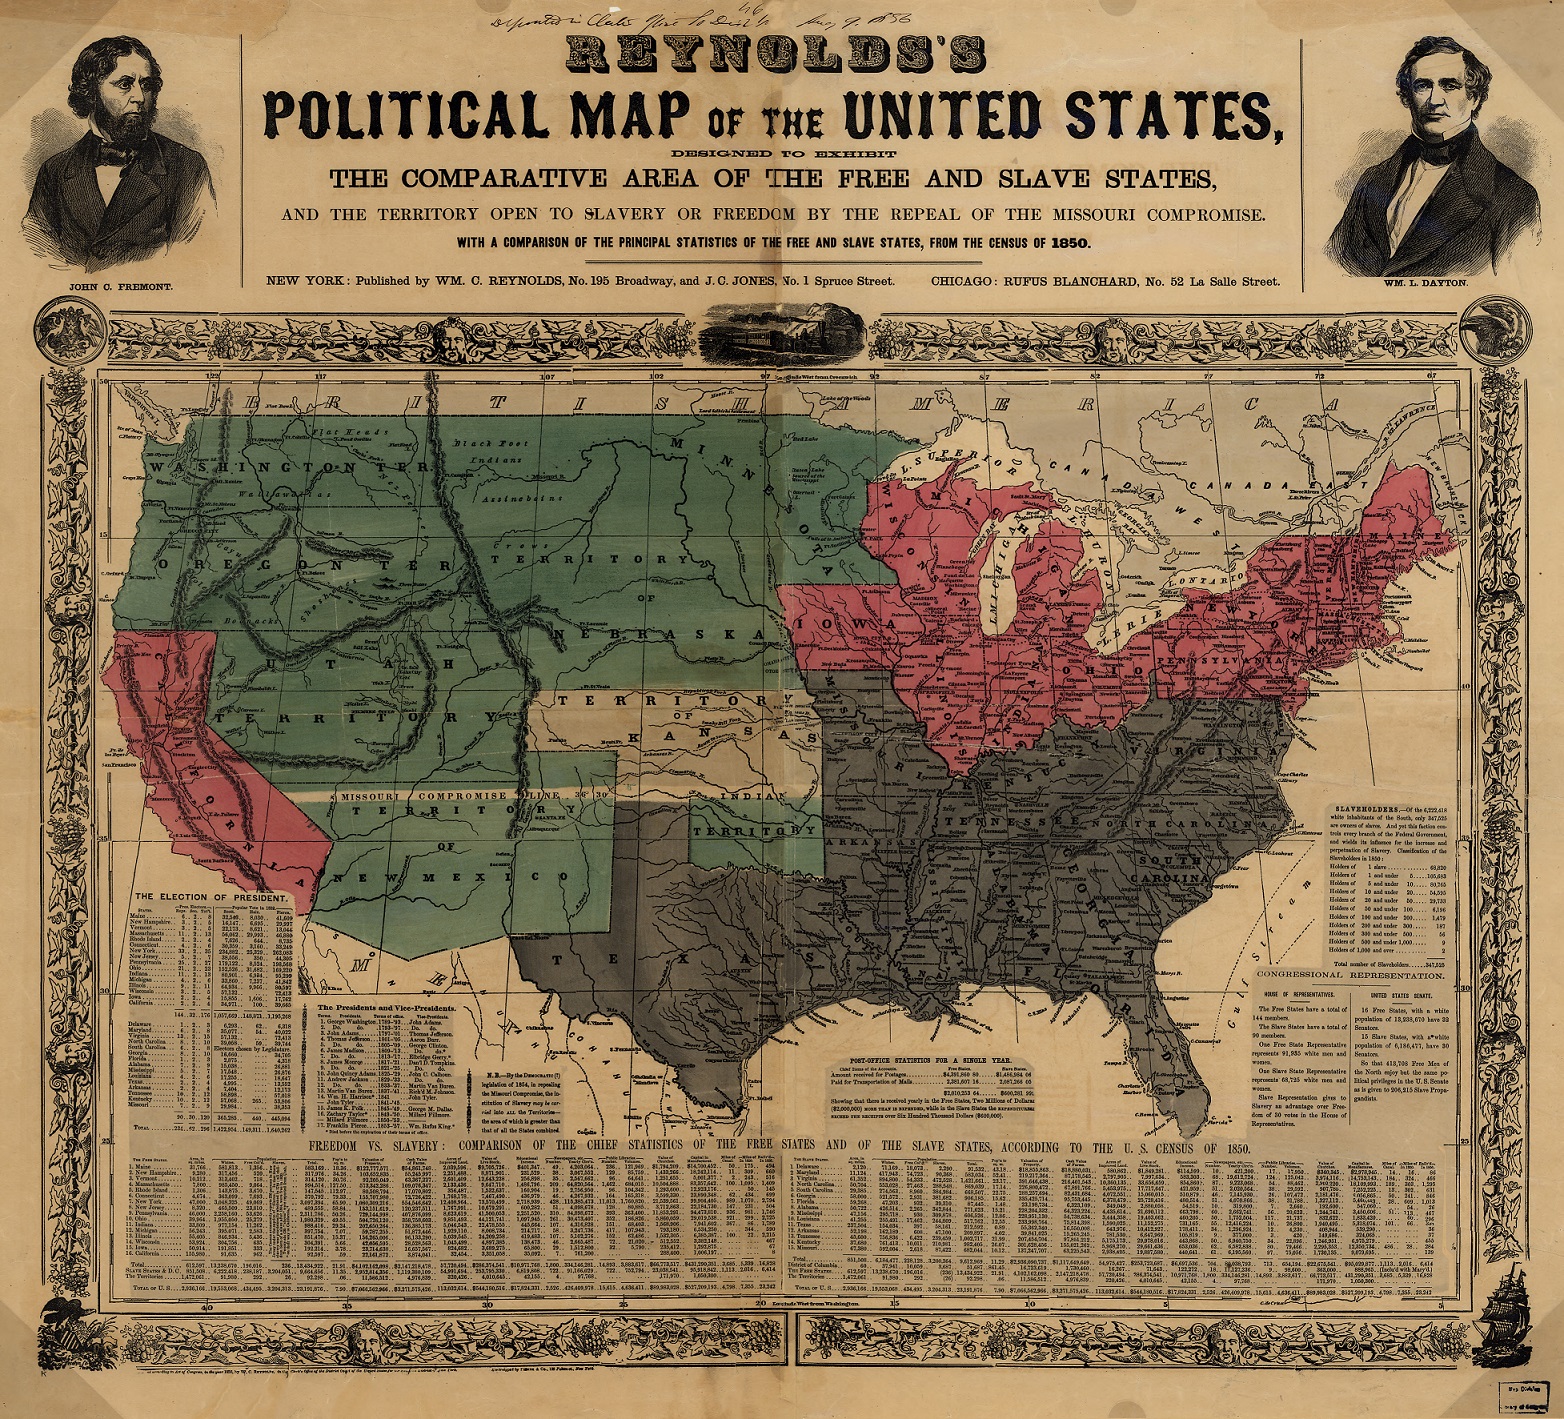 Политическая карта Соединенных Штатов Америки США в 1856 году штаты с рабством и штаты свободные